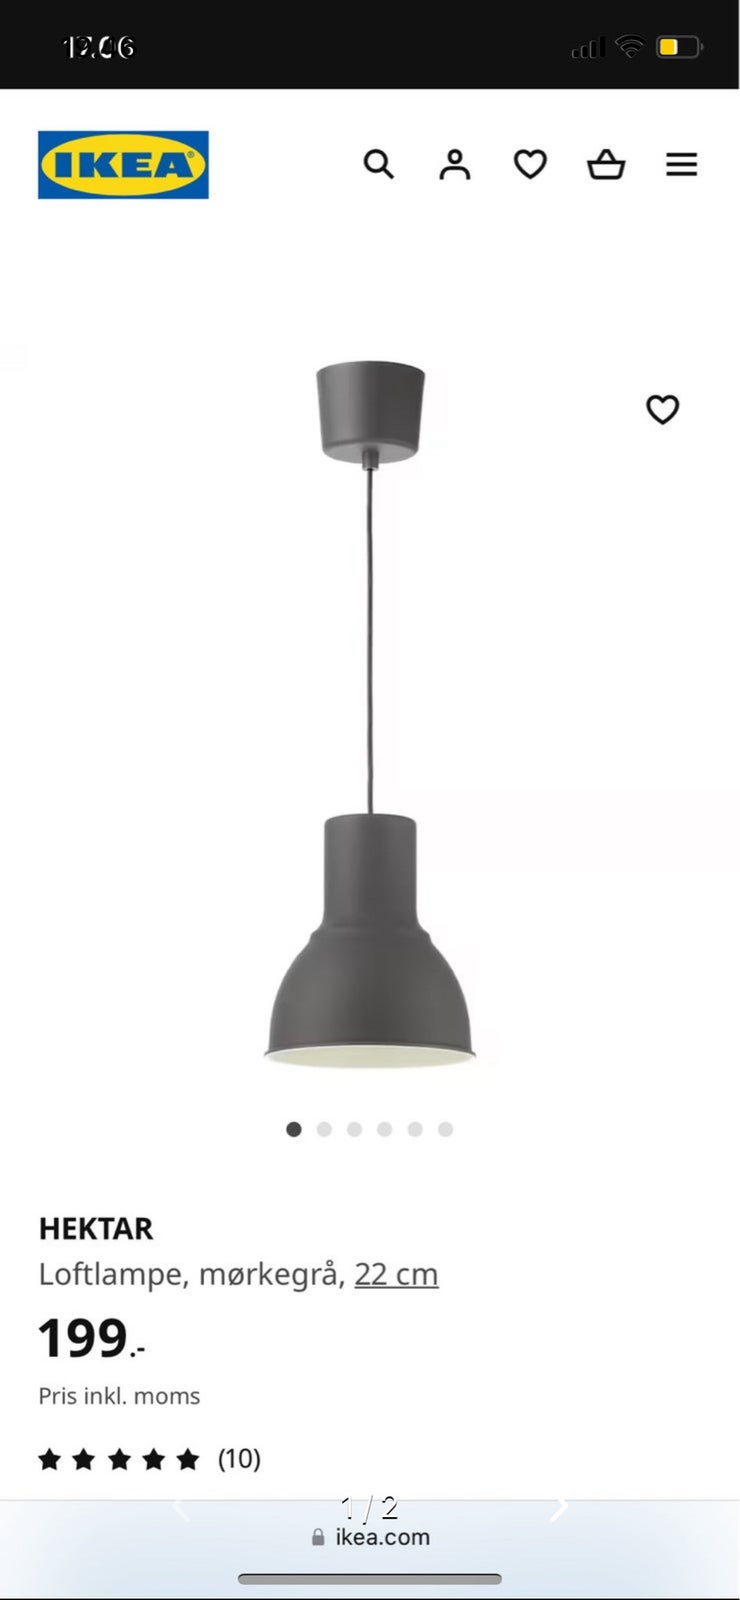 To IKEA Hektar-loftlamper i mørkegrå kan afhent...